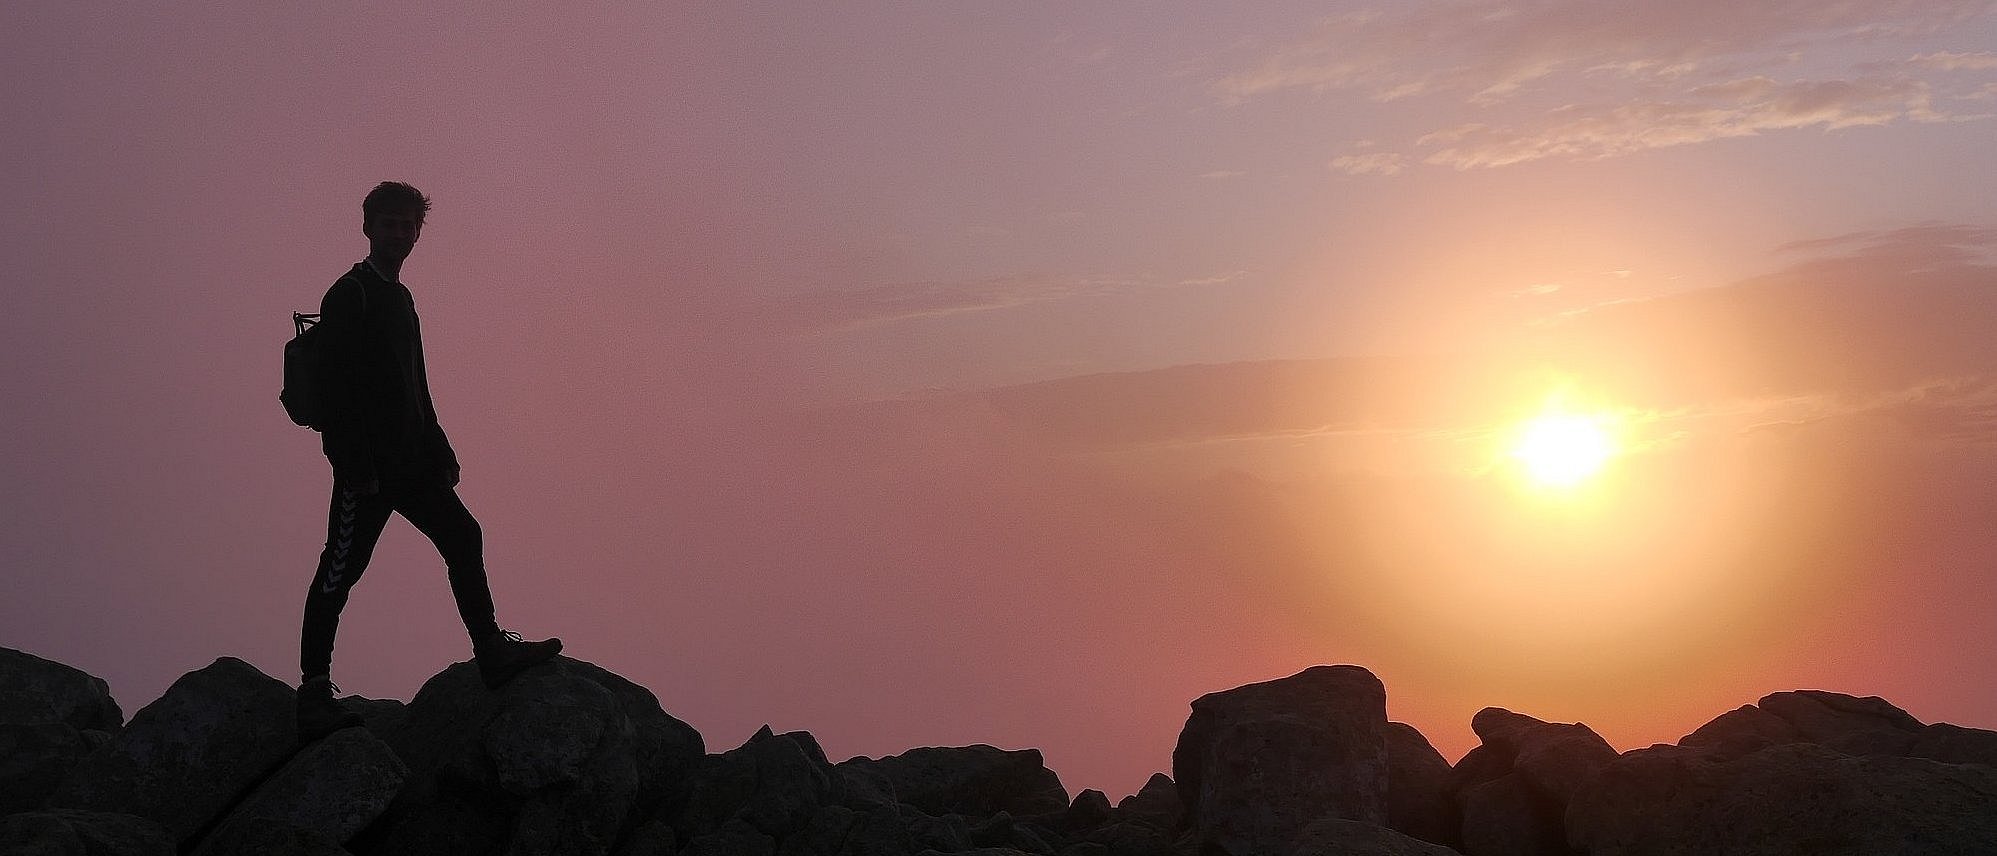 Wanderung bei Sonnenaufgang (Bild: Paritätischer Wohlfahrtsverband)